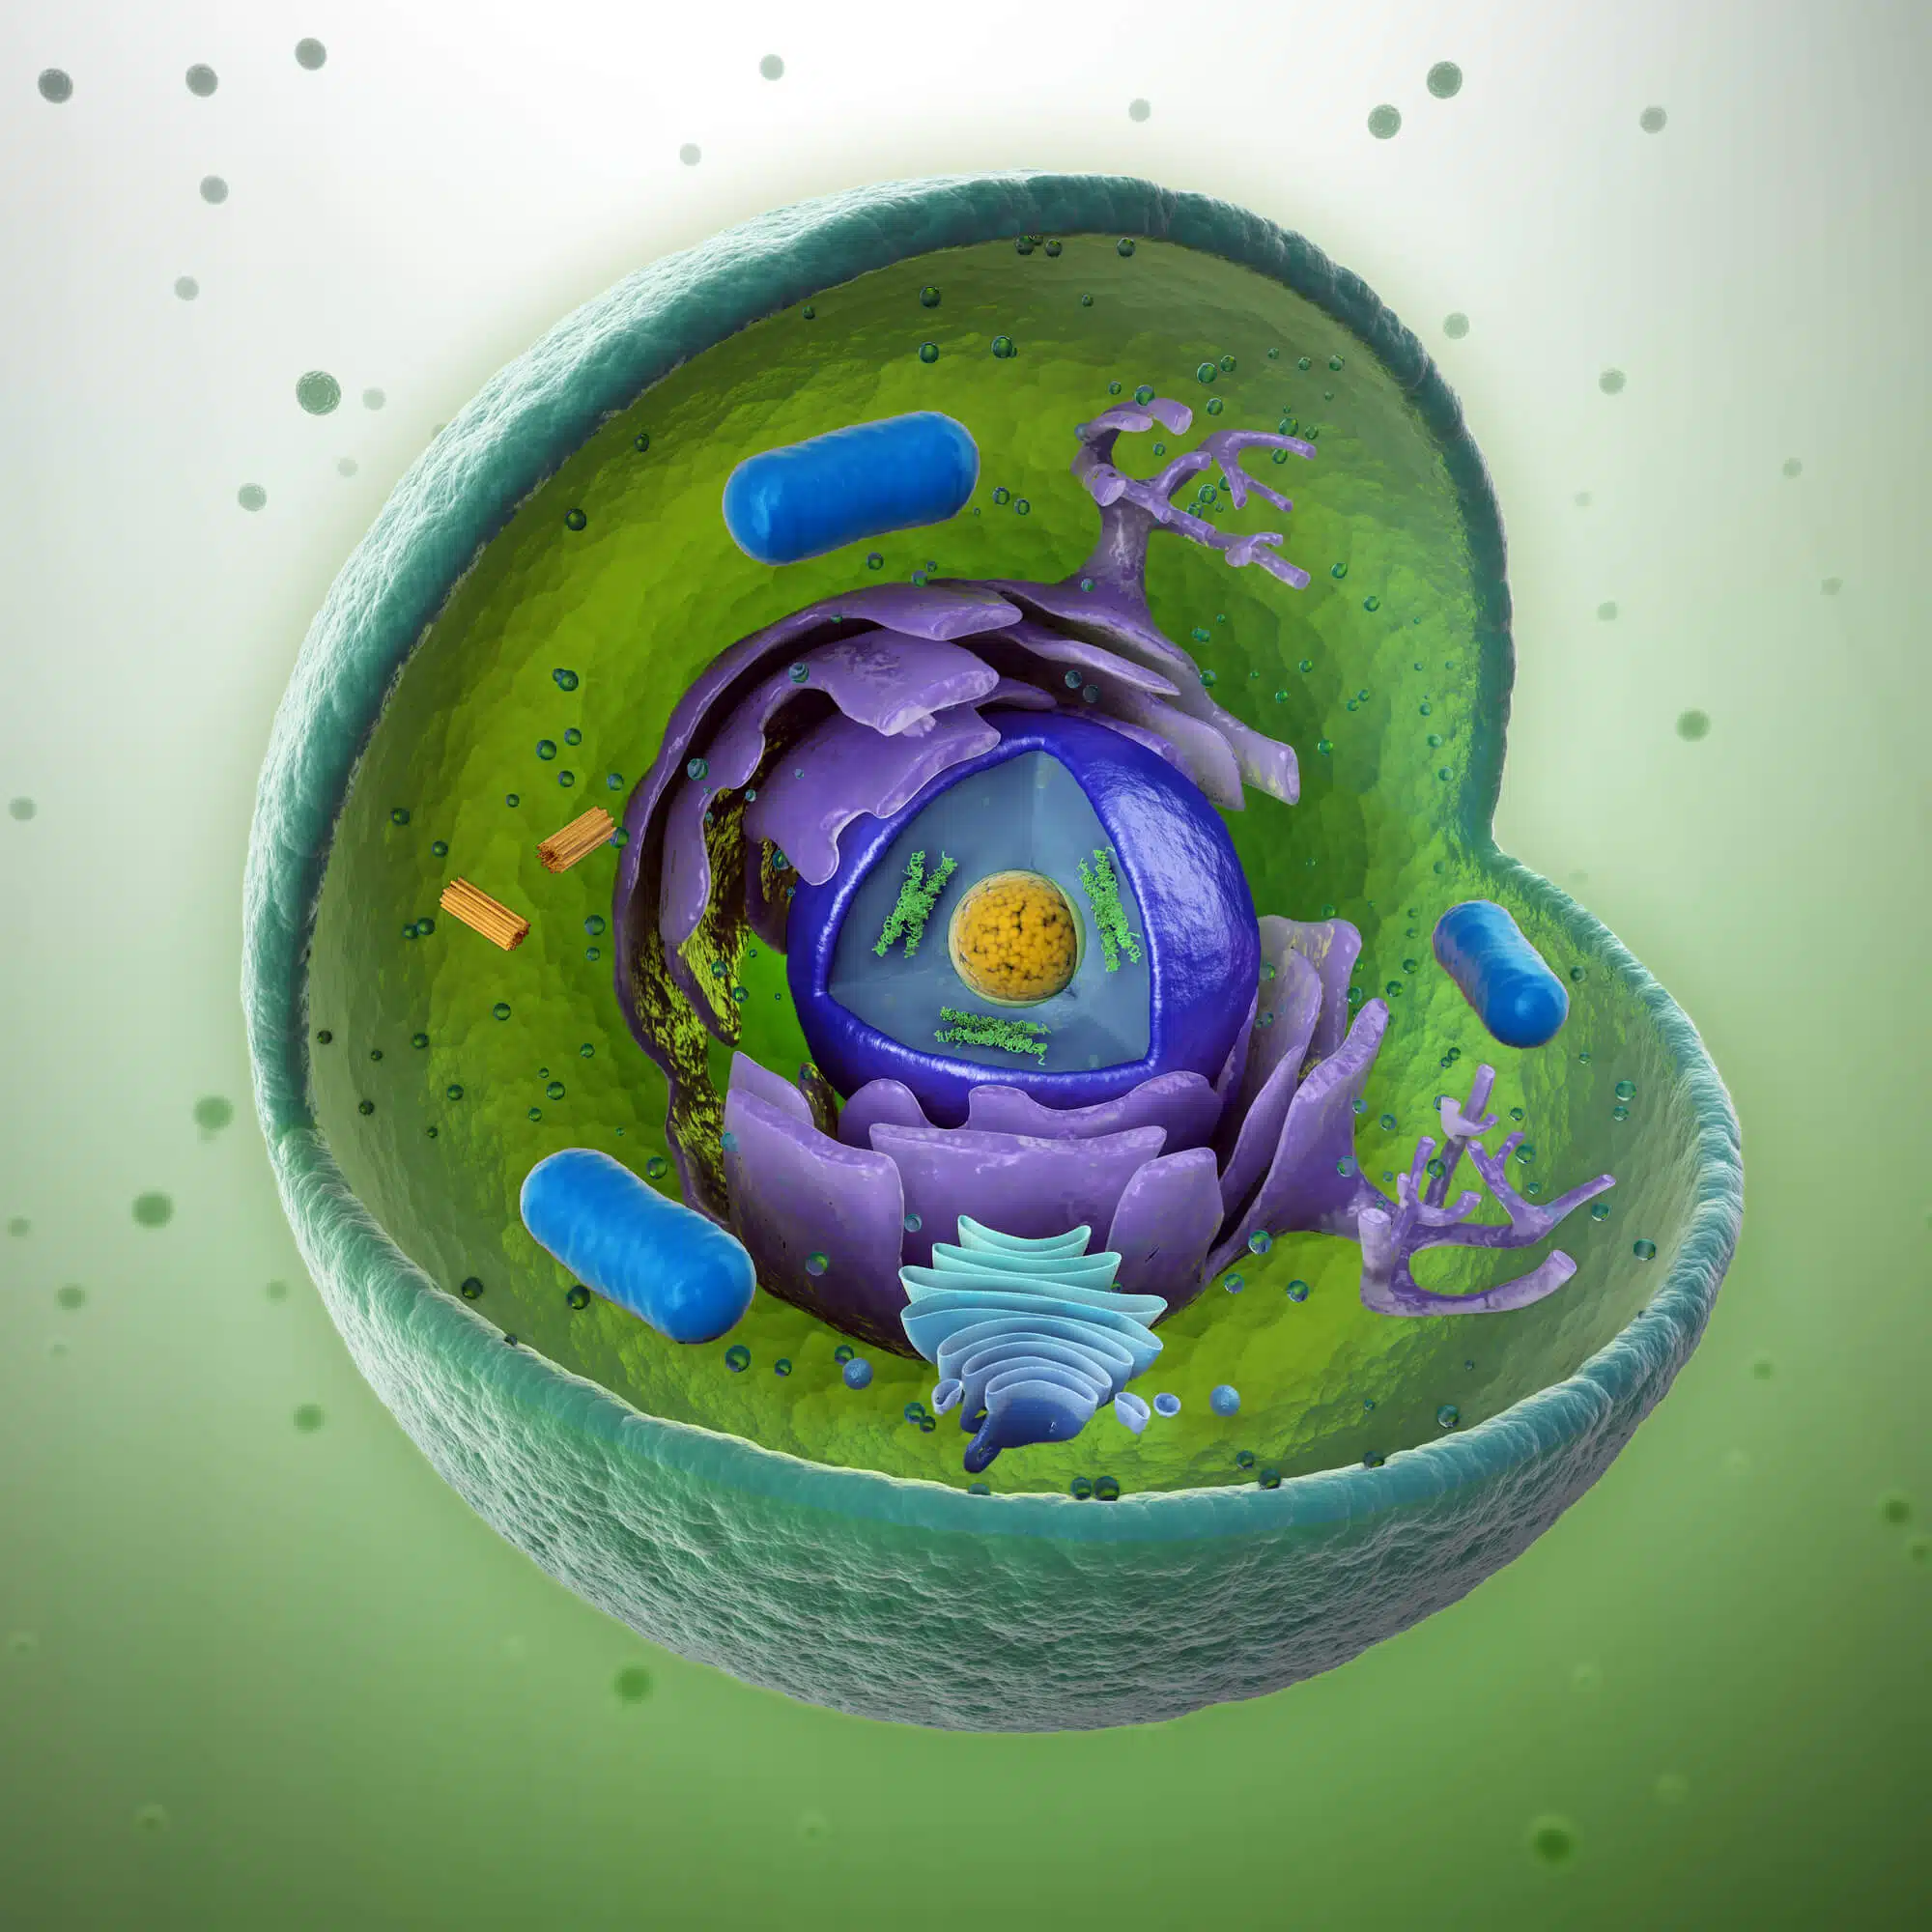 המבנה הפנימי של תא בעל חיים.   <a href="https://depositphotos.com. ">המחשה: depositphotos.com</a>